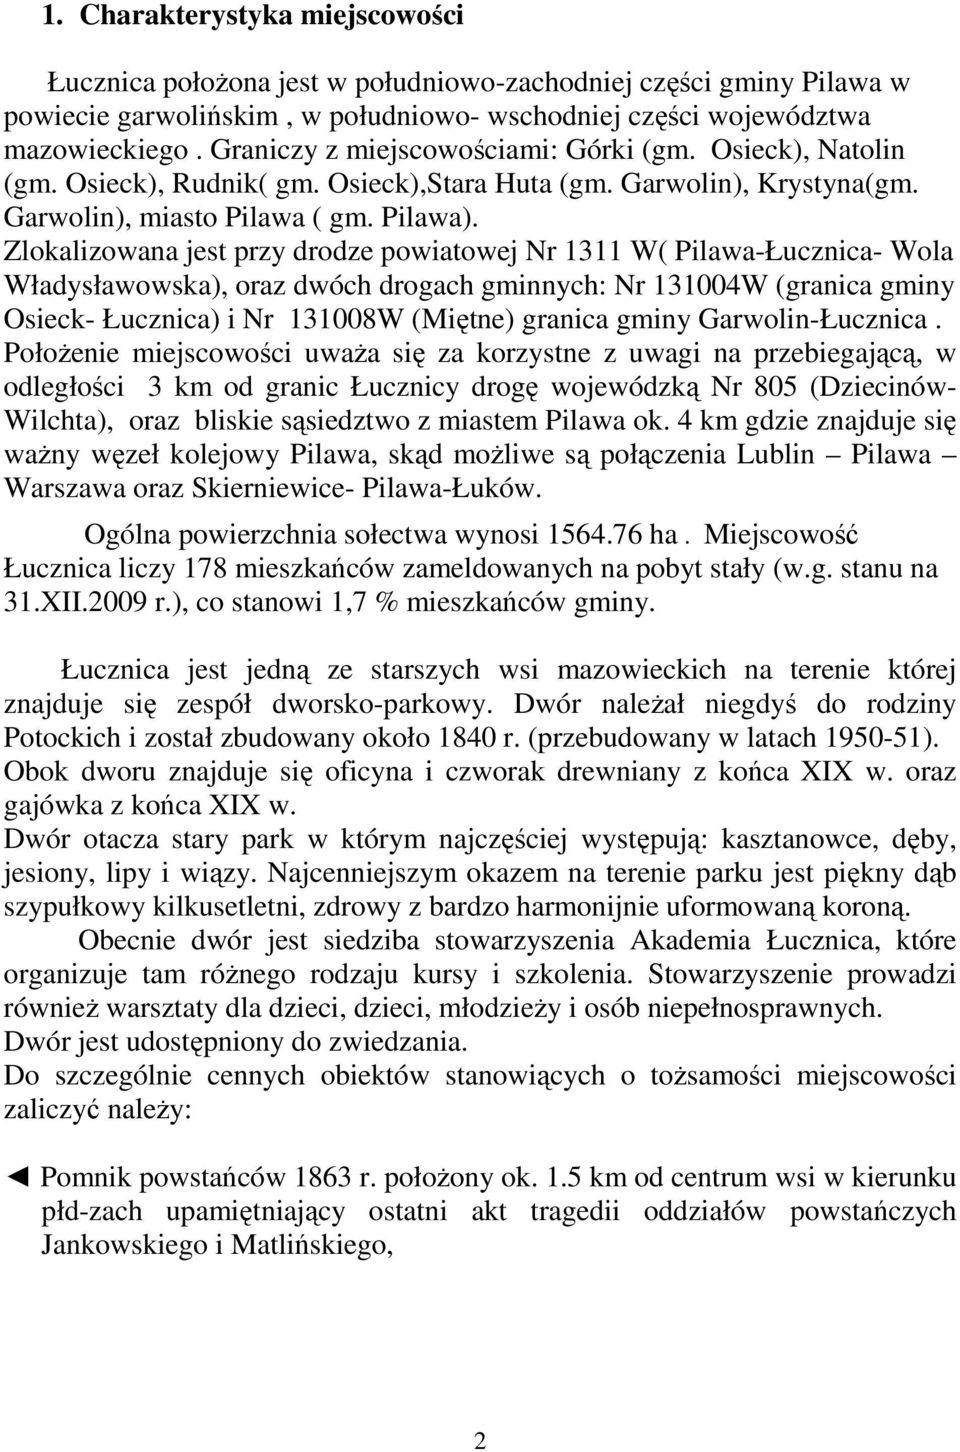 Zlokalizowana jest przy drodze powiatowej Nr 1311 W( Pilawa-Łucznica- Wola Władysławowska), oraz dwóch drogach gminnych: Nr 131004W (granica gminy Osieck- Łucznica) i Nr 131008W (Miętne) granica